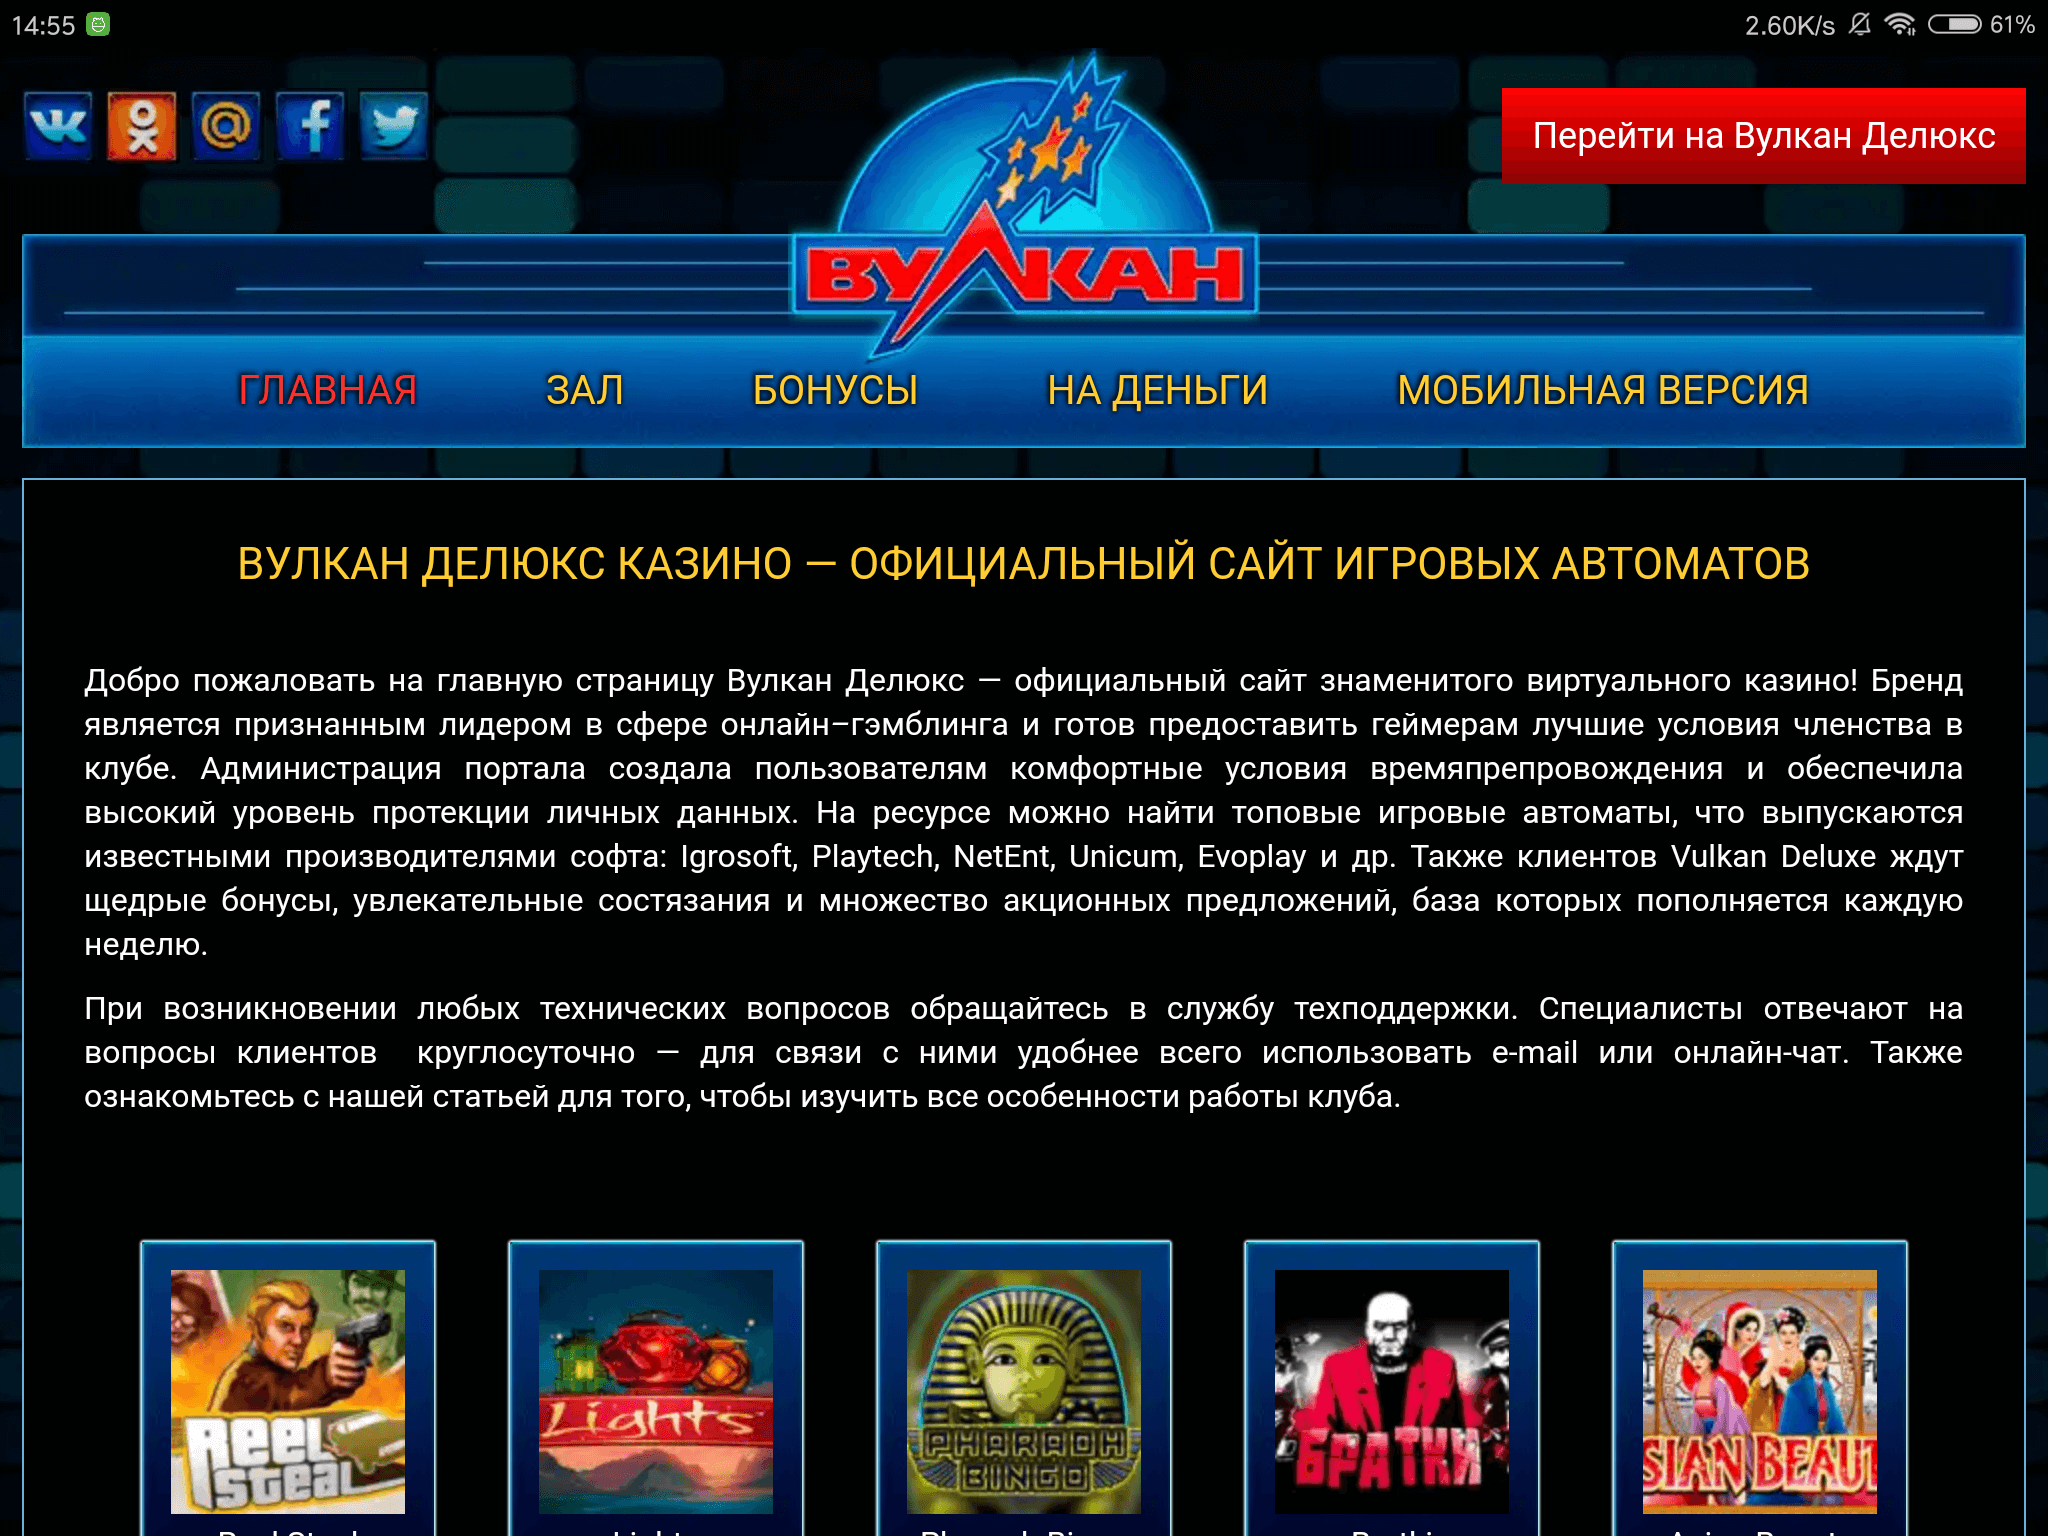 Казино онлайн вулкан делюкс rox casino com официальный